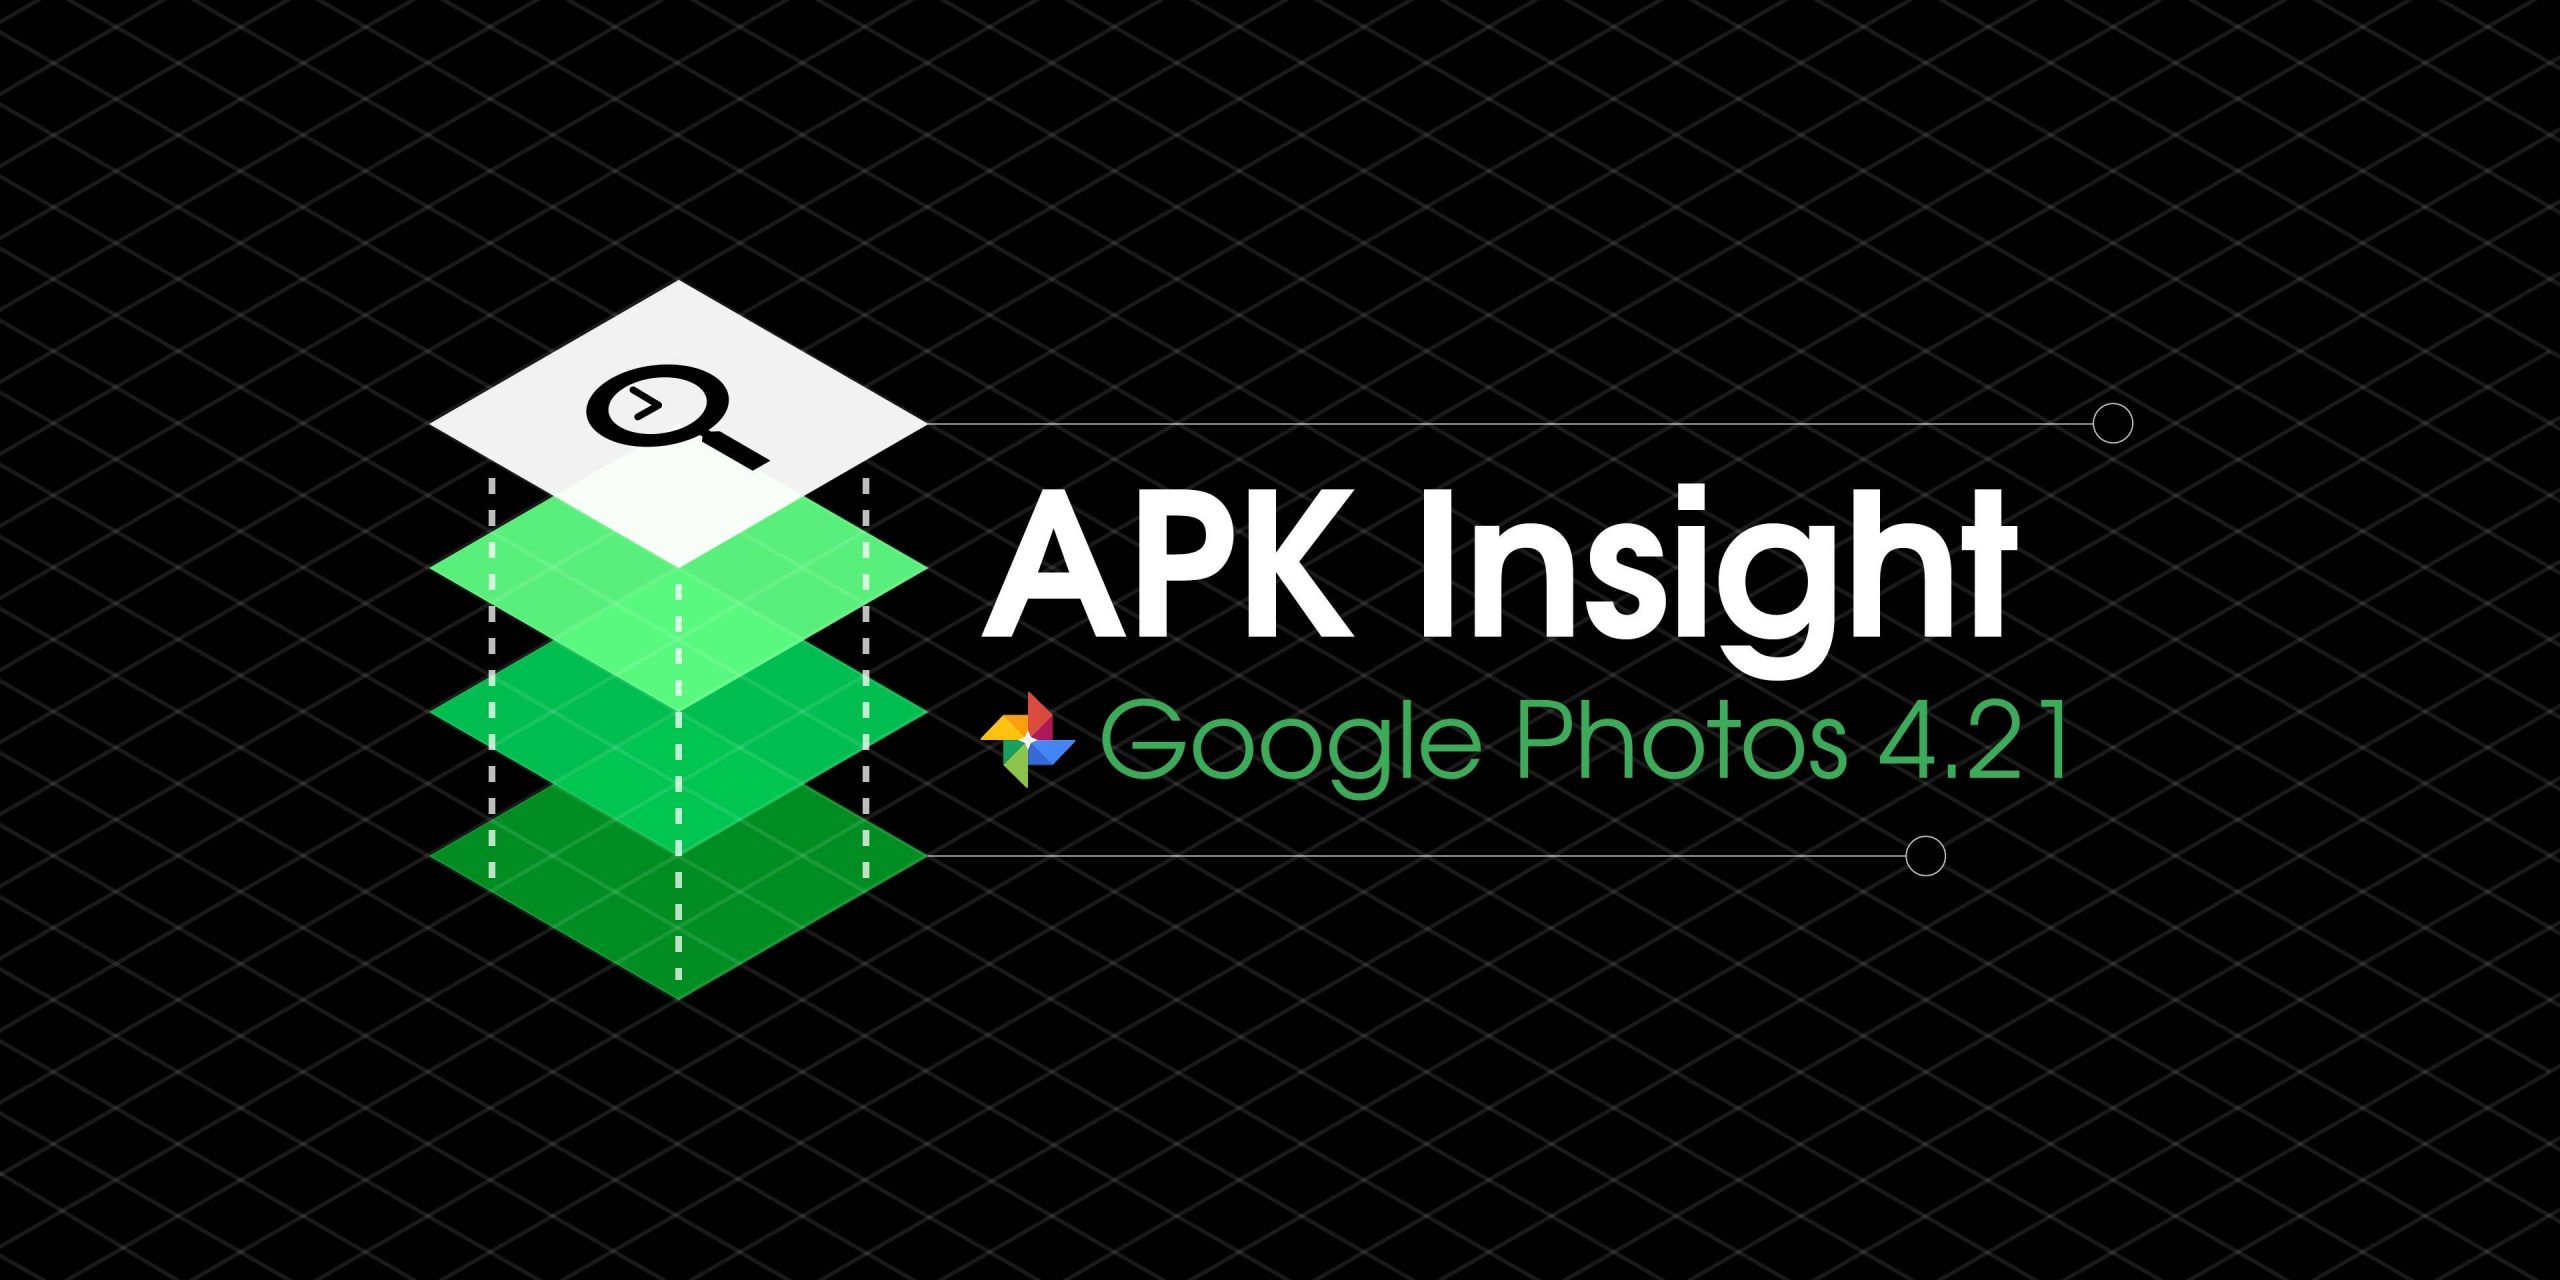 Google Fotos 4.21 sugere 'Histórias' para 'Memórias', configuração no porta-retrato Smart Display no aplicativo [APK Insight]